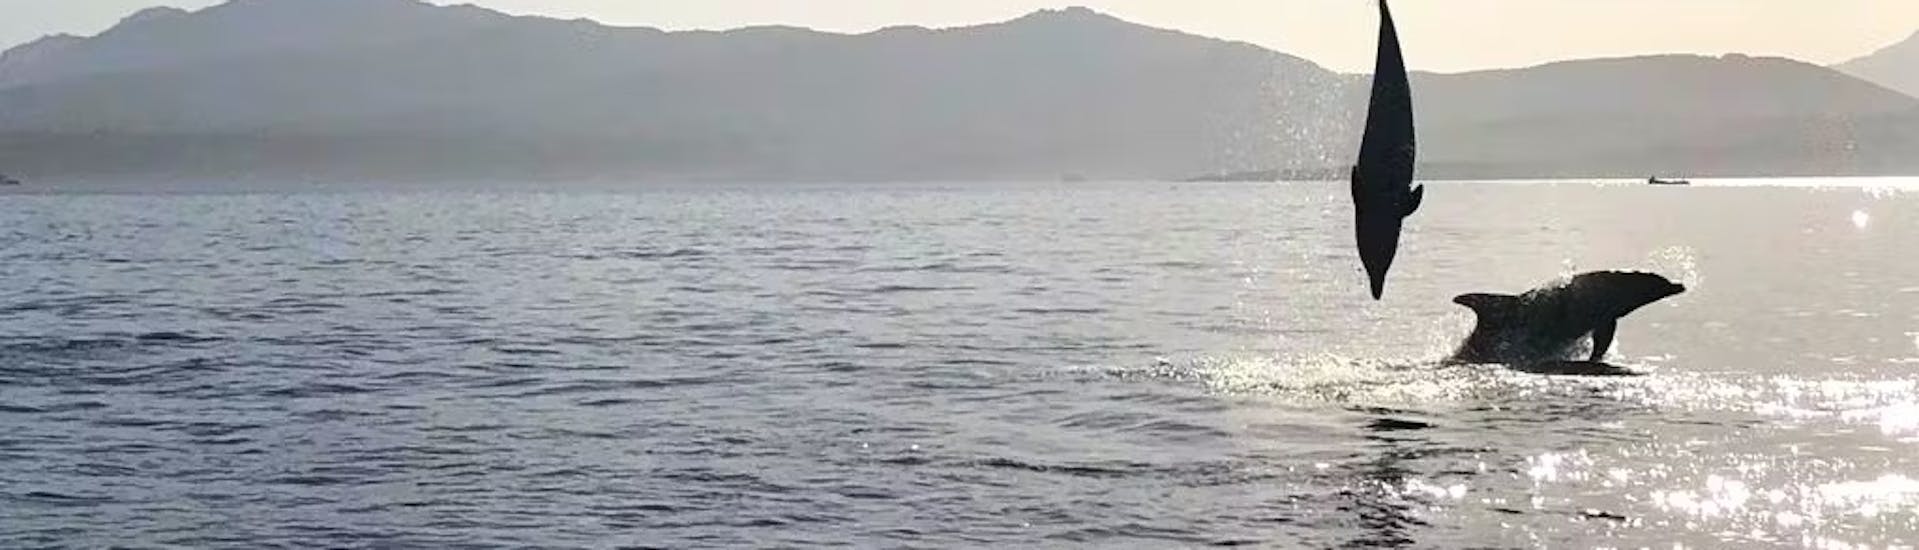 Quelques dauphins sautent dans l'eau pendant l'excursion en bateau semi-rigide à Golfo Aranci avec observation des dauphins et snorkeling depuis Olbia.